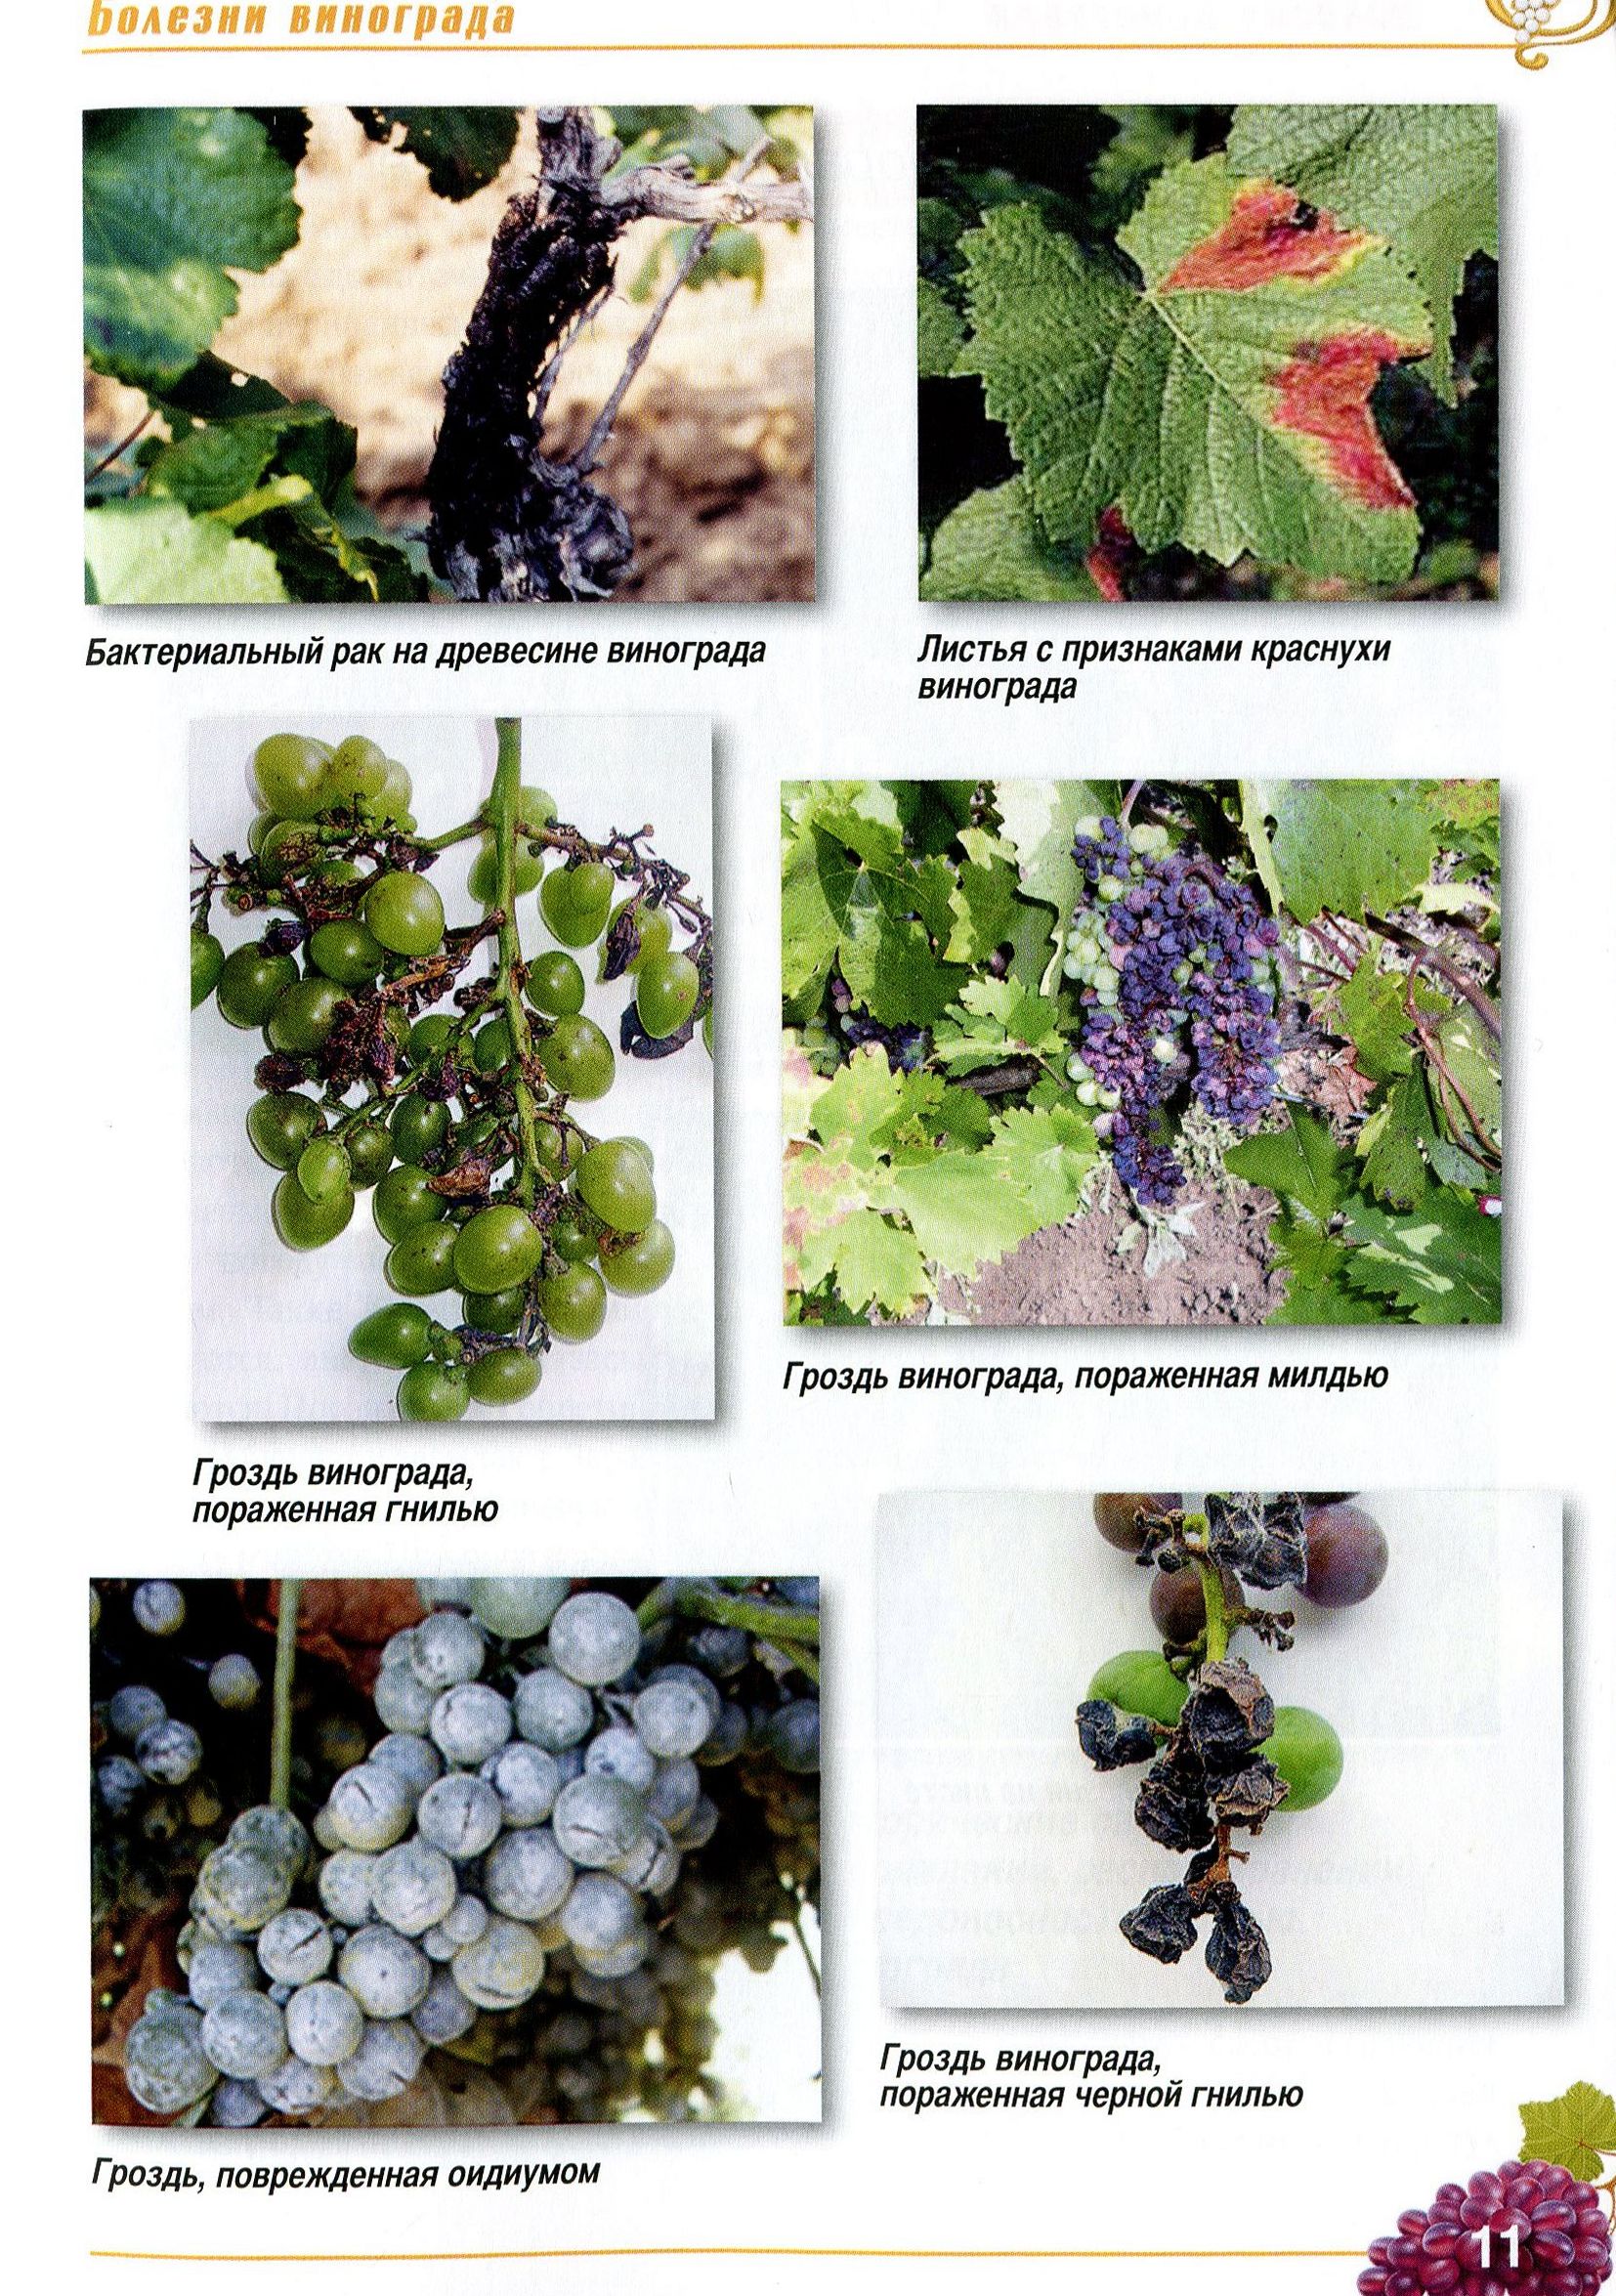 Болезни винограда: описание с фотографиями и способами лечения